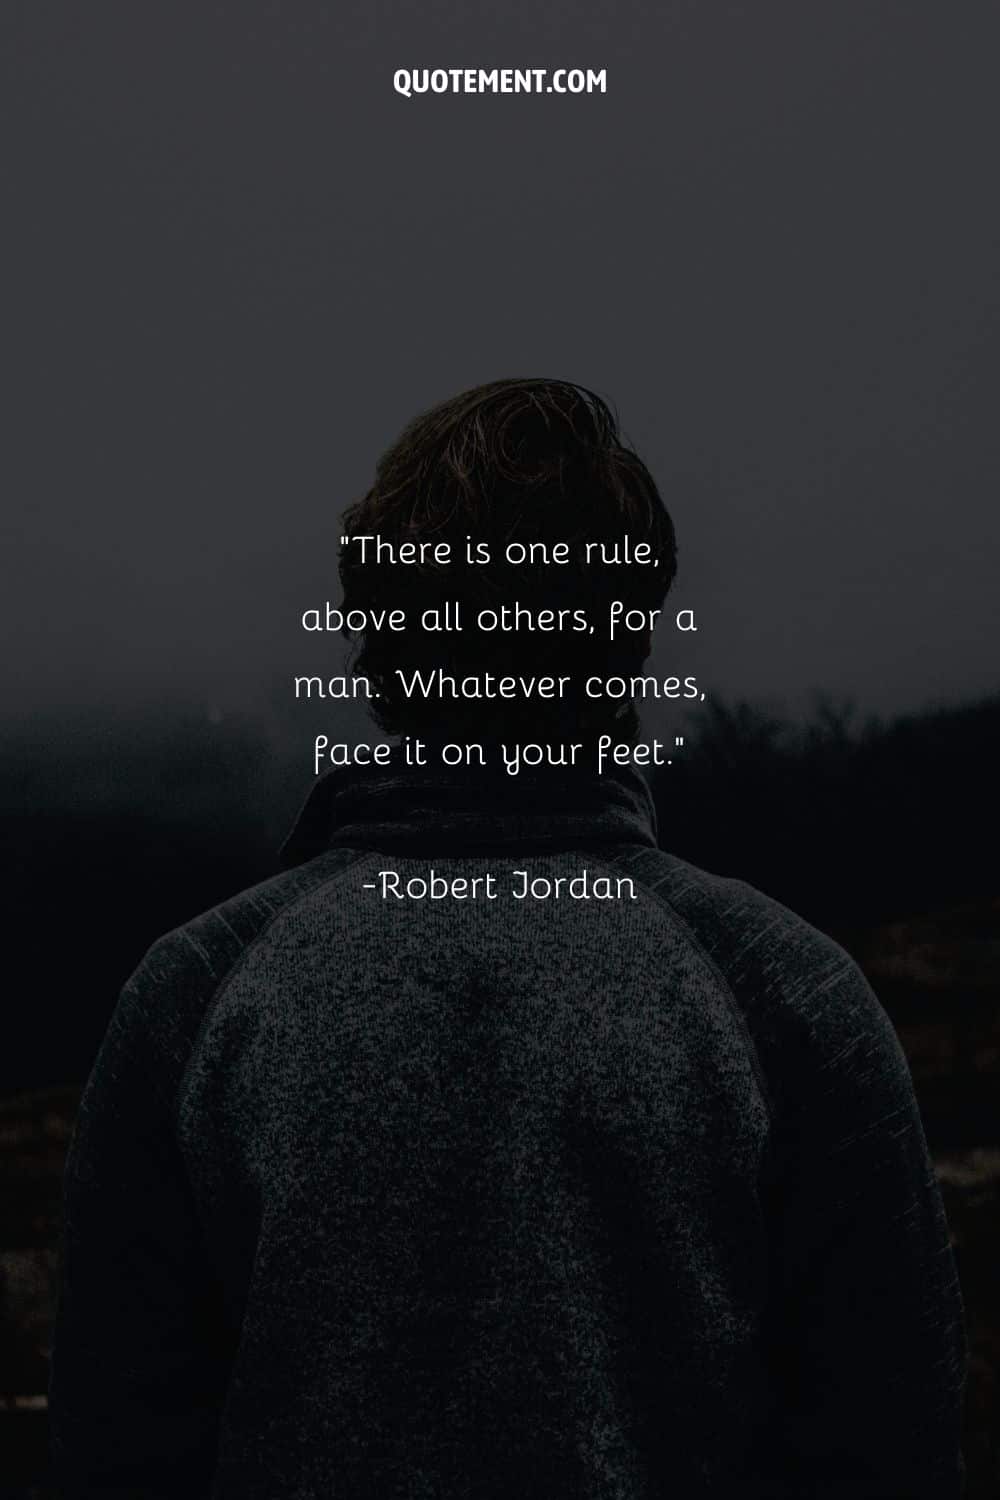 backshot image of a man representing Robert Jordan quote